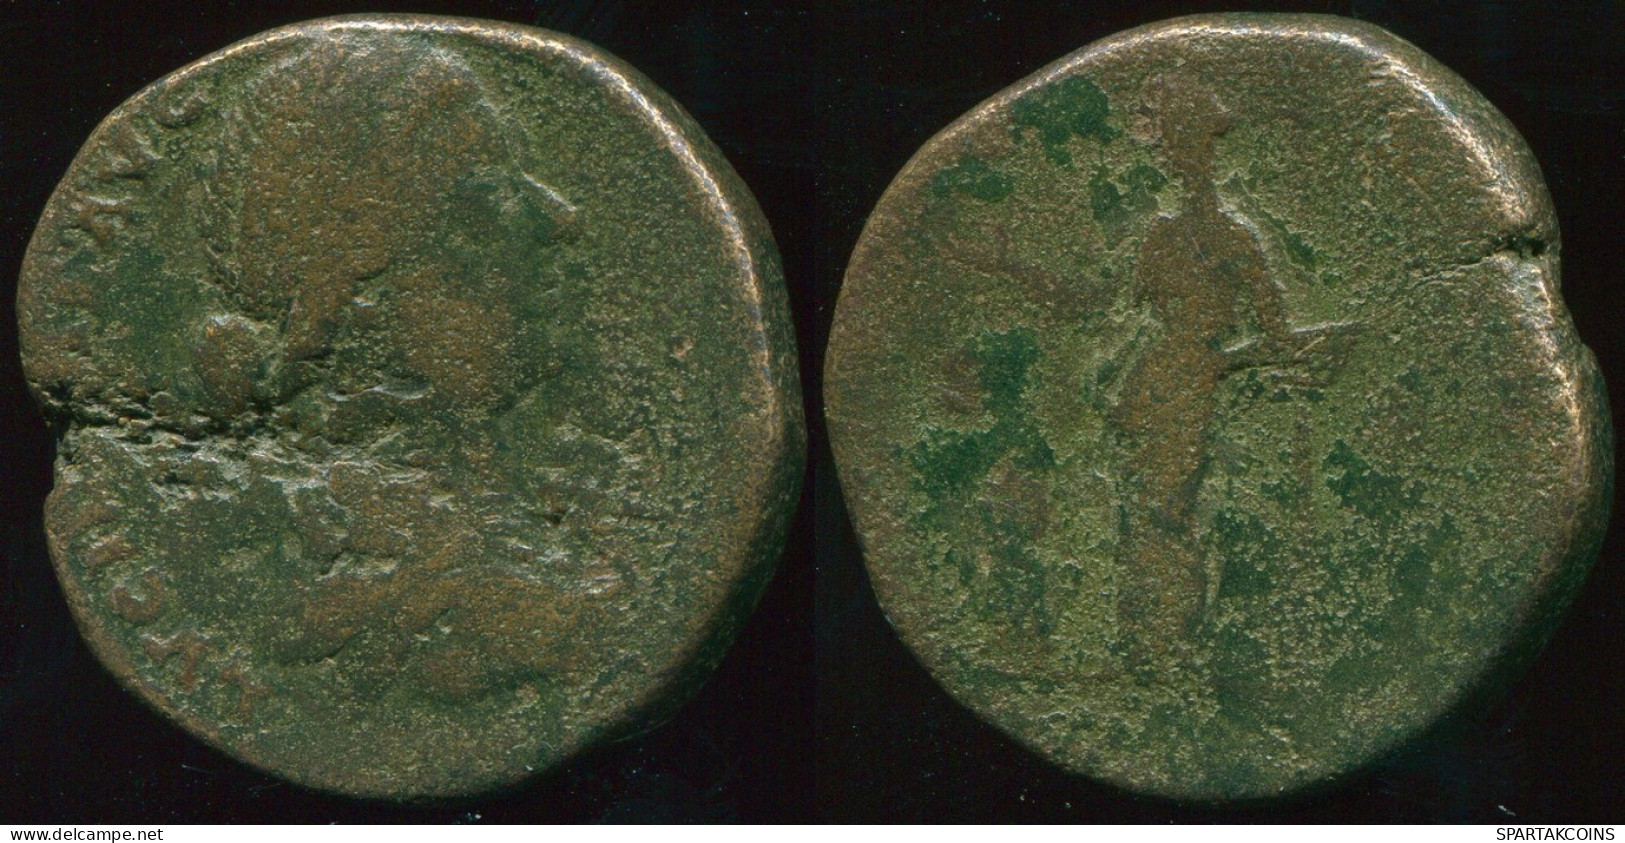 RÖMISCHE PROVINZMÜNZE Roman Provincial Ancient Coin 19.56g/29.51mm #RPR1008.10.D.A - Province